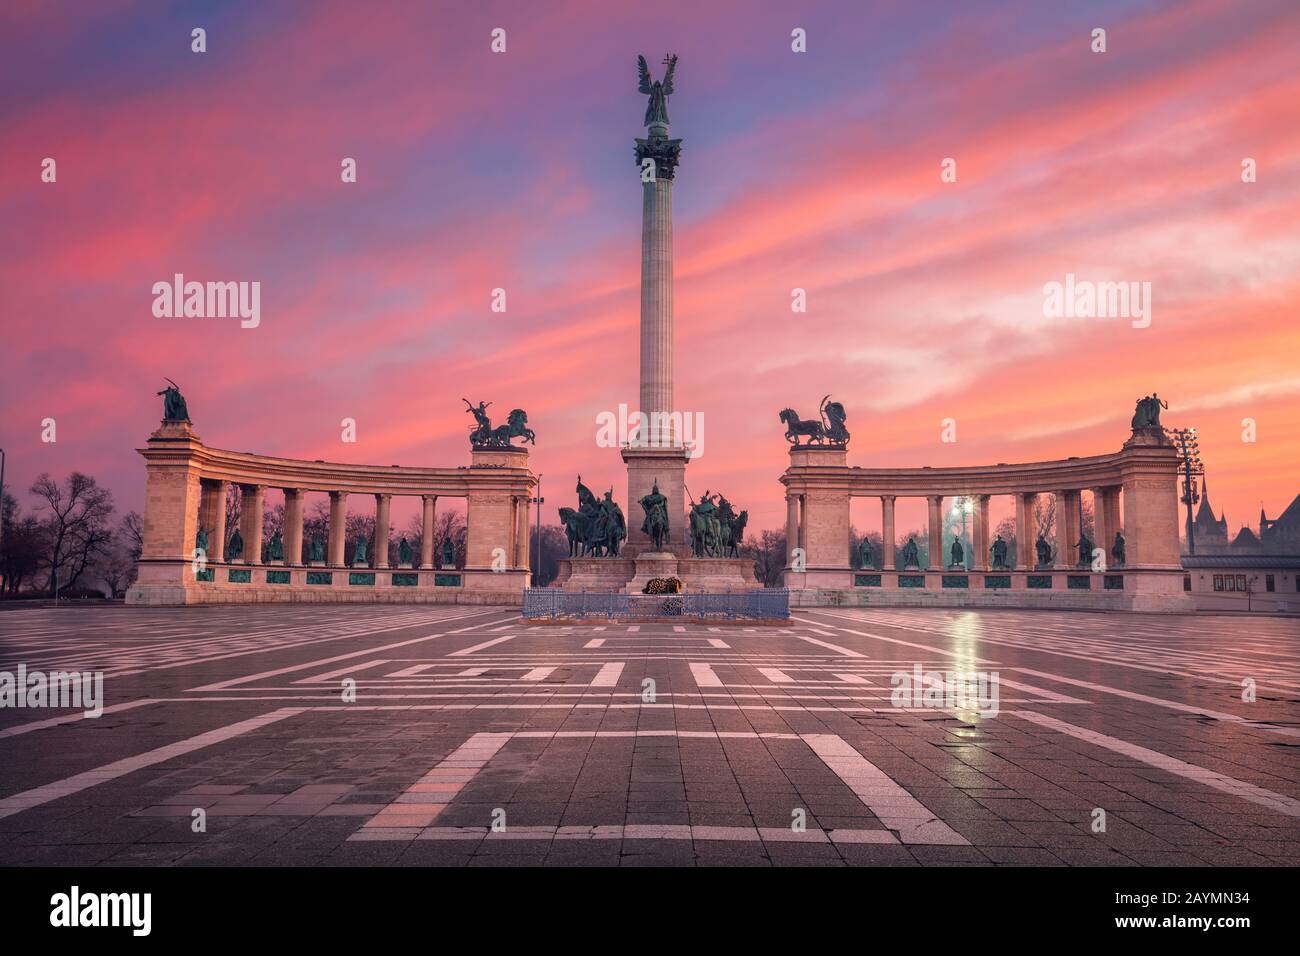 Budapest, Ungheria. Immagine del paesaggio urbano della Piazza degli Eroi con il Monumento del Millennio, Budapest, Ungheria durante la bella alba. Foto Stock